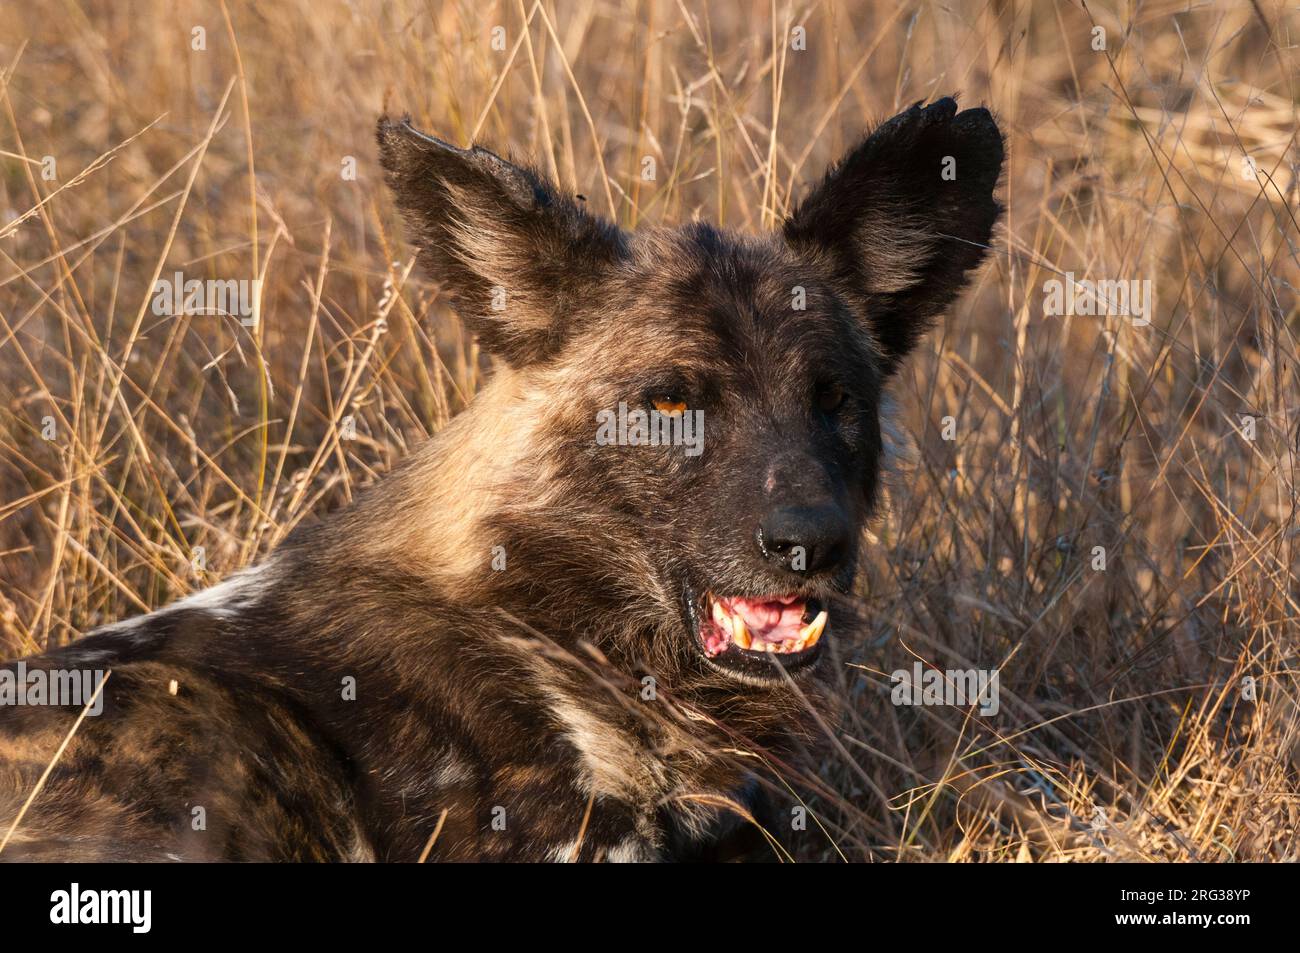 Ritratto di un cane selvatico africano, cane da caccia del Capo, o lupo dipinto, Lycaon pictus. Riserva del gioco di Mala Mala, Sudafrica. Foto Stock